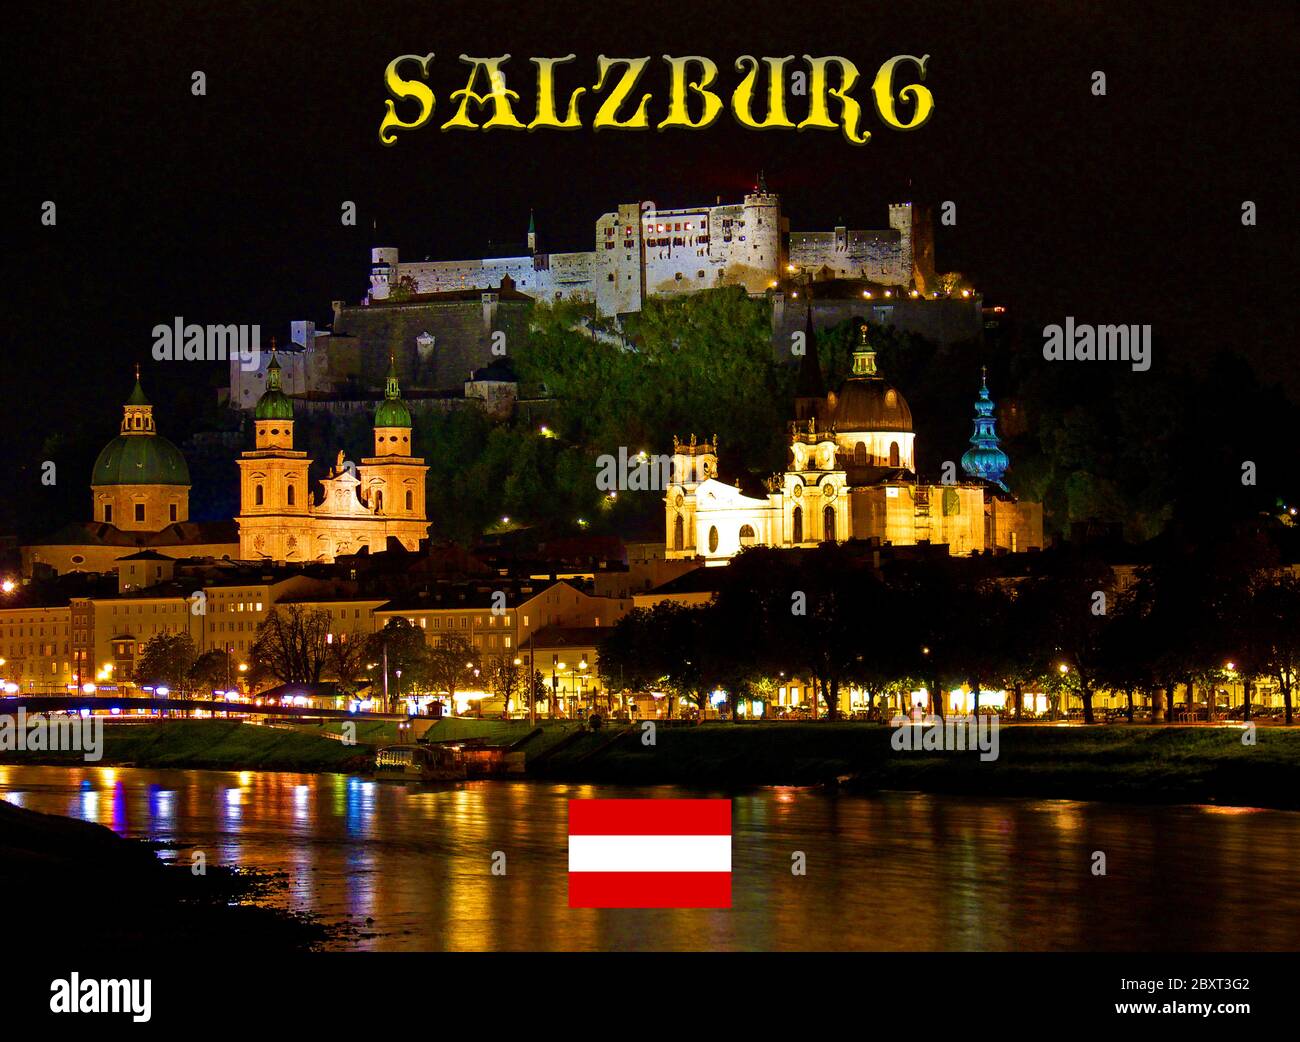 La città austriaca di Salisburgo nelle Alpi orientali di notte - Castello di Hohensalzburg (in alto), Salzburger Dom (Cattedrale di Salisburgo) (in basso a sinistra) e Kolle Foto Stock